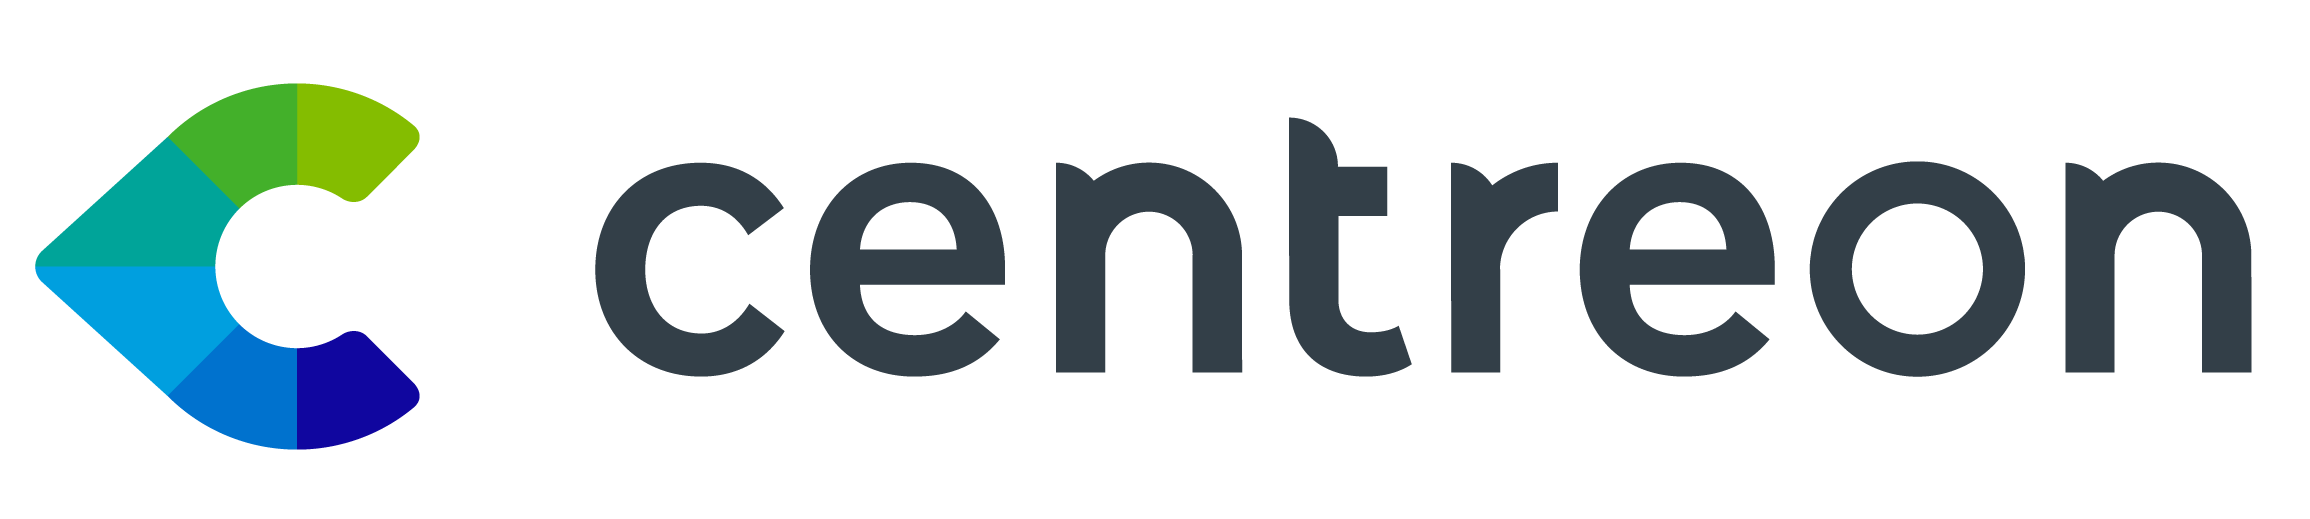 Logo Centreon